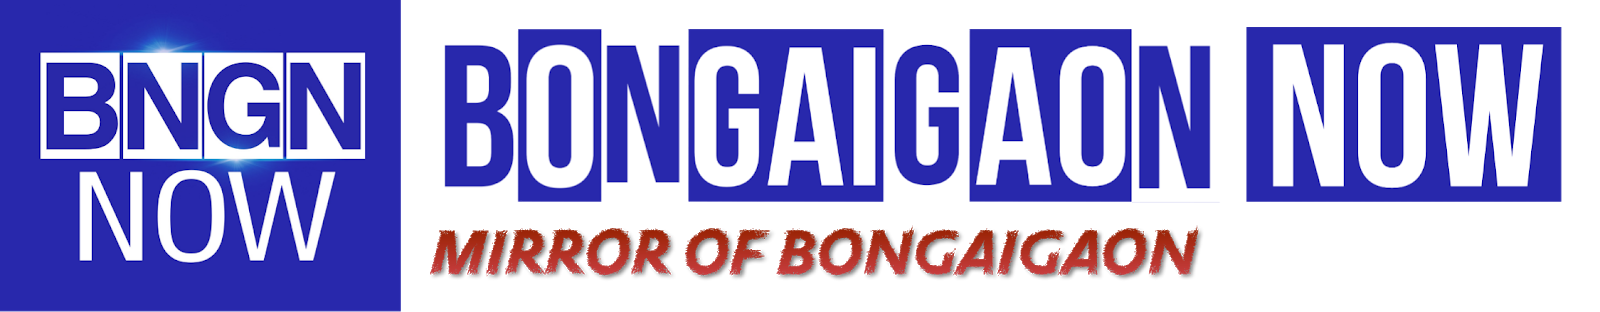 Bongaigaon Now - Mirror of Bongaigaon